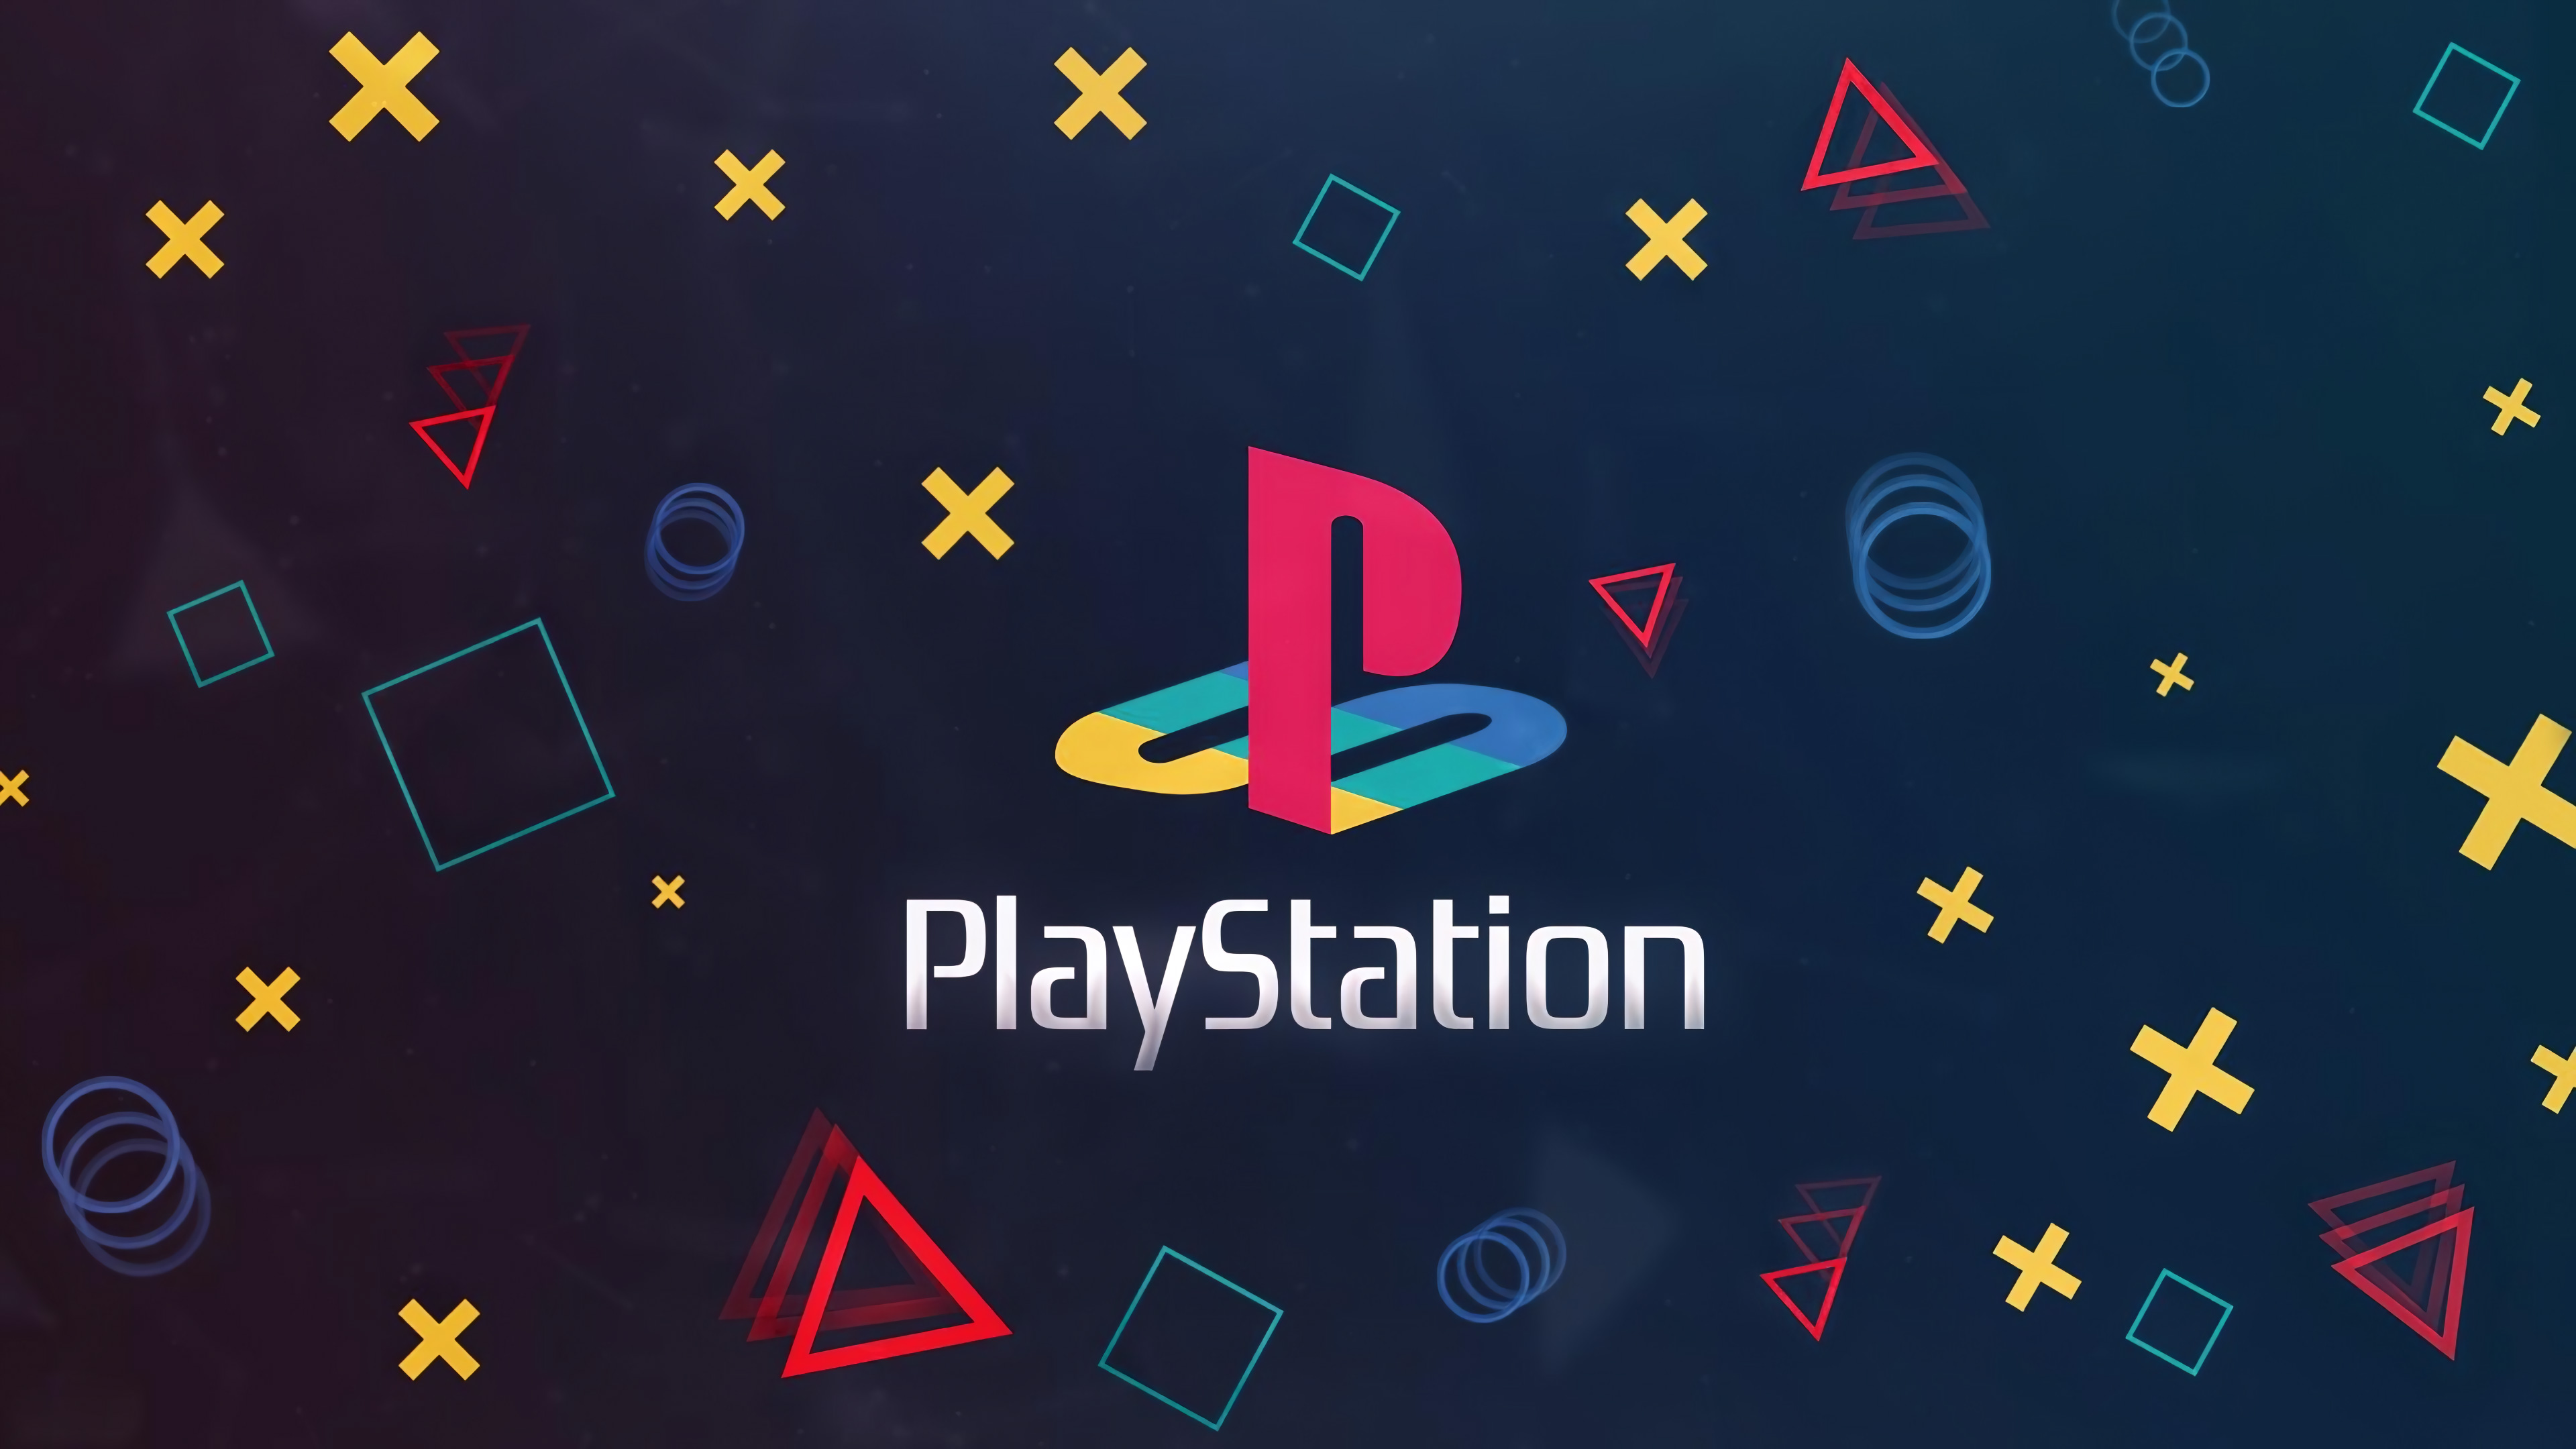 Фото бесплатно Playstation, логотип, hi-tech